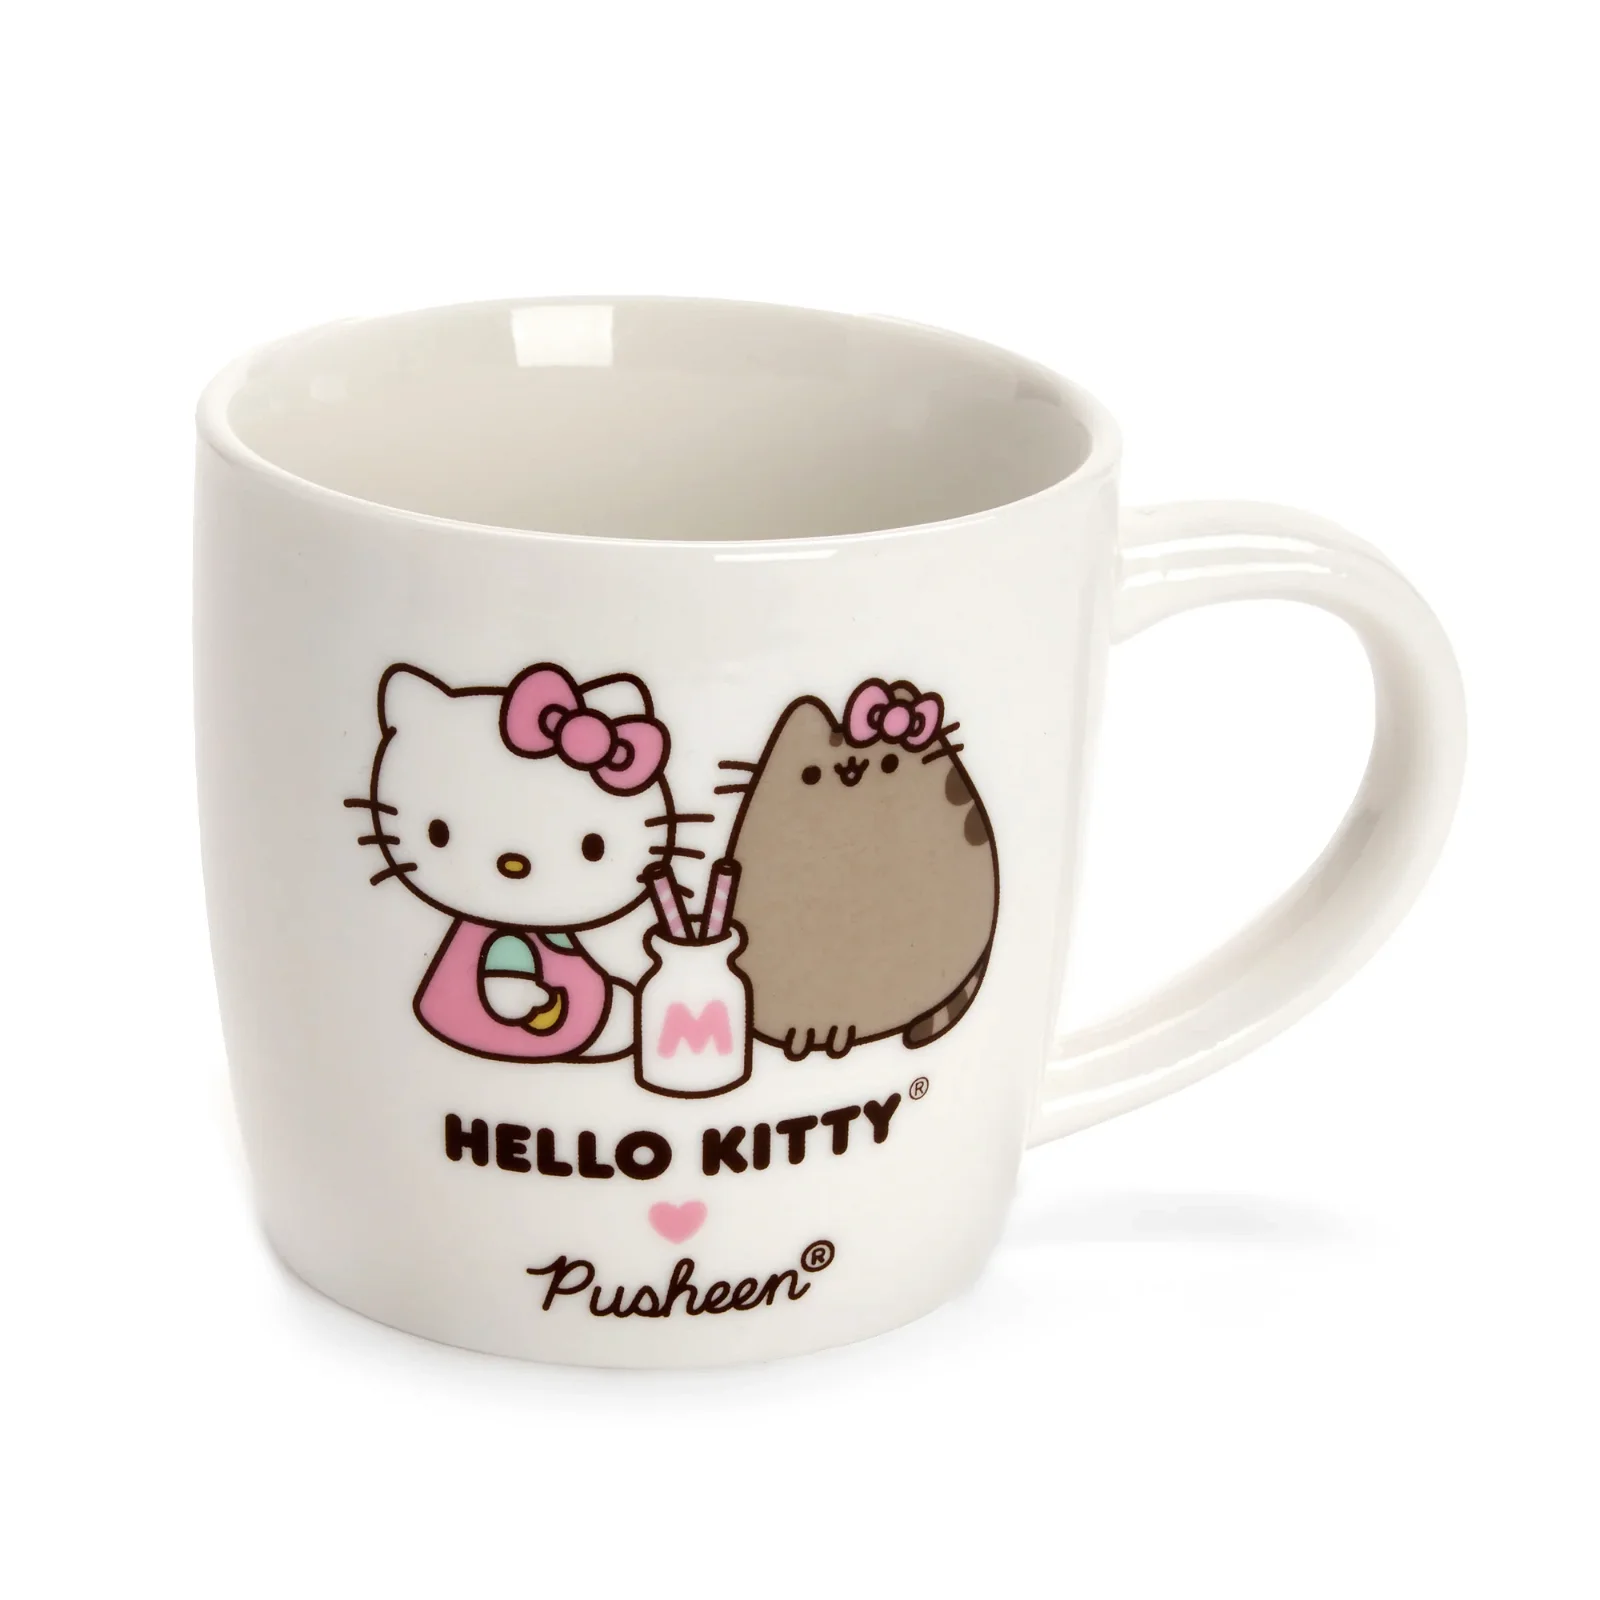 Image of Hello Kitty x Pusheen Mug